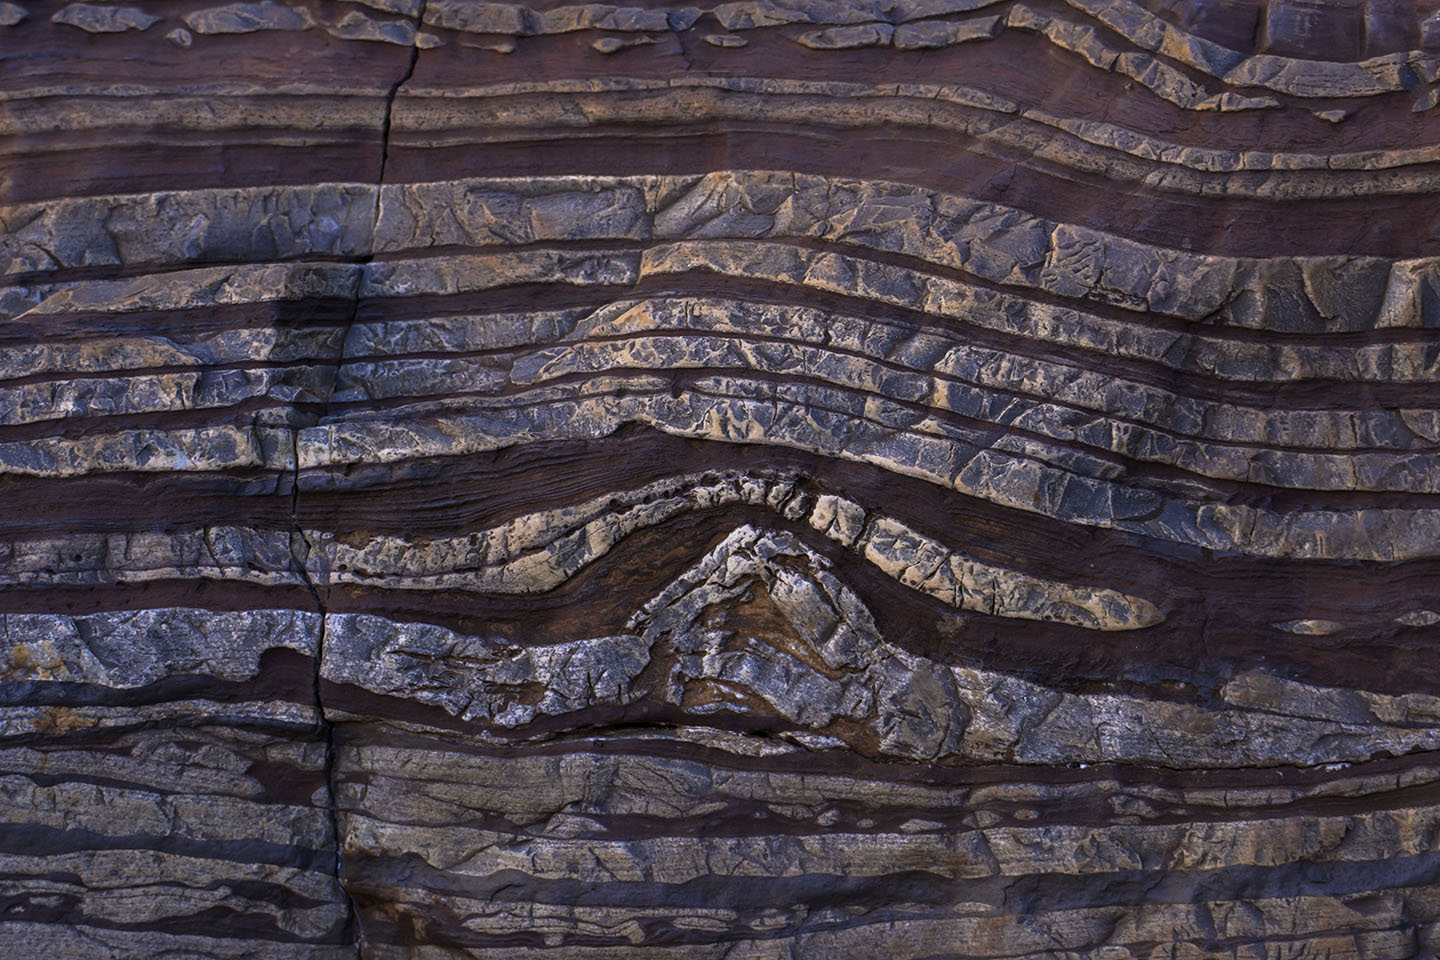 iron ore layers